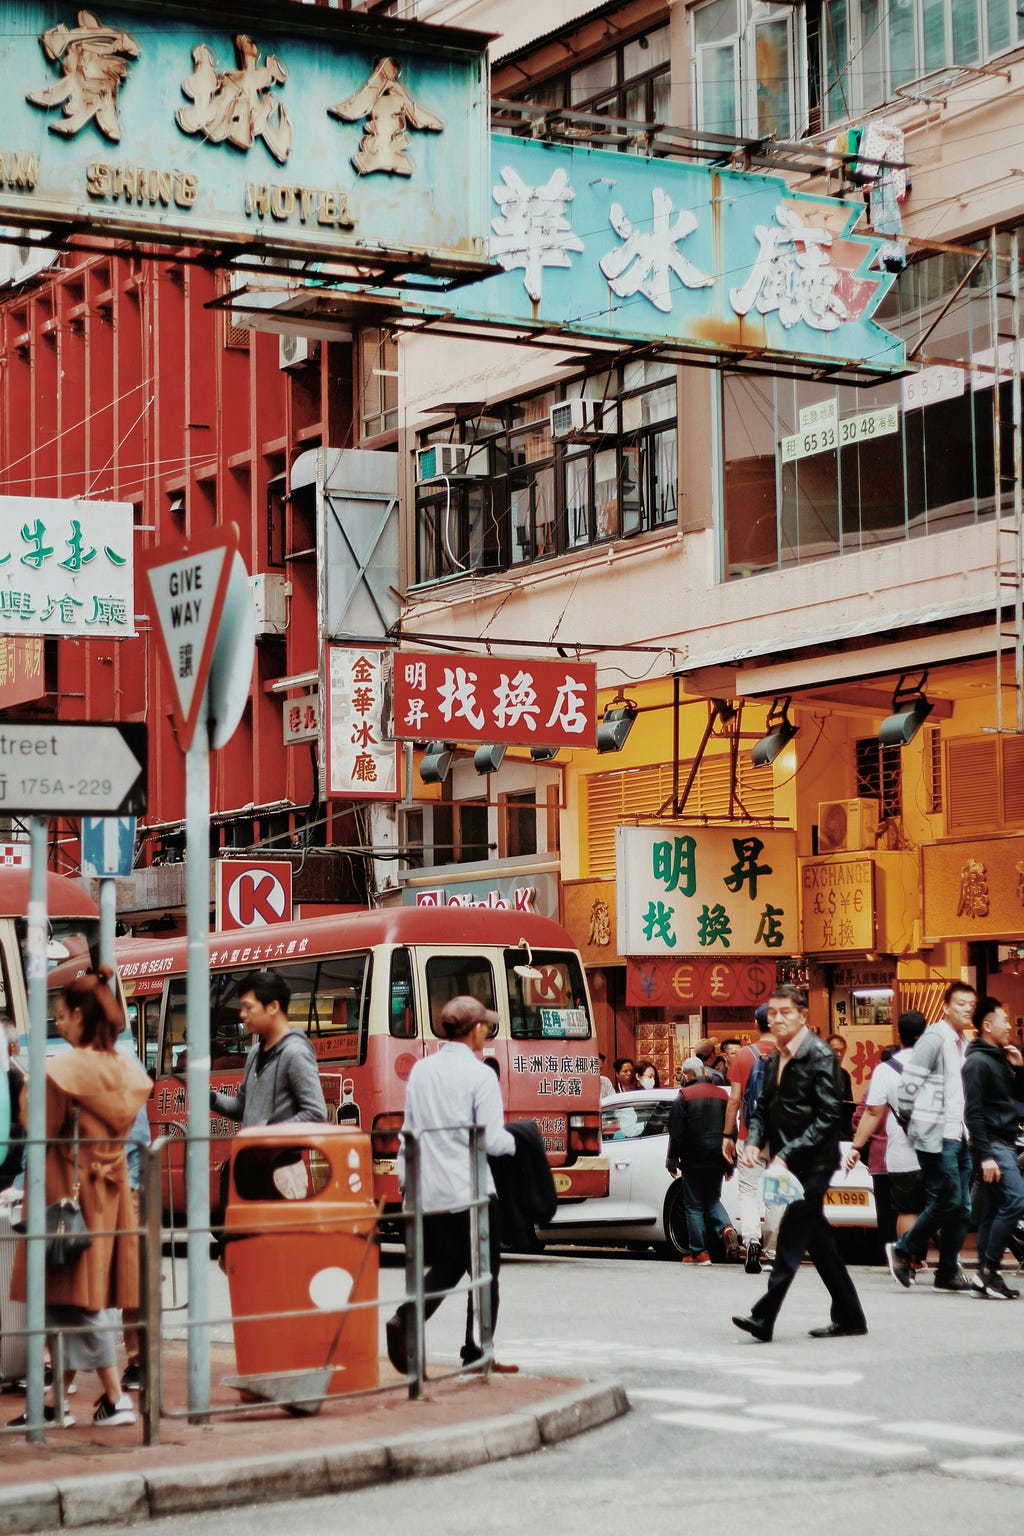 香港的經濟繁榮和相對自由的社會氛圍吸引了來自世界各地的移民，使得香港成為一個多元文化和多語言的社會。